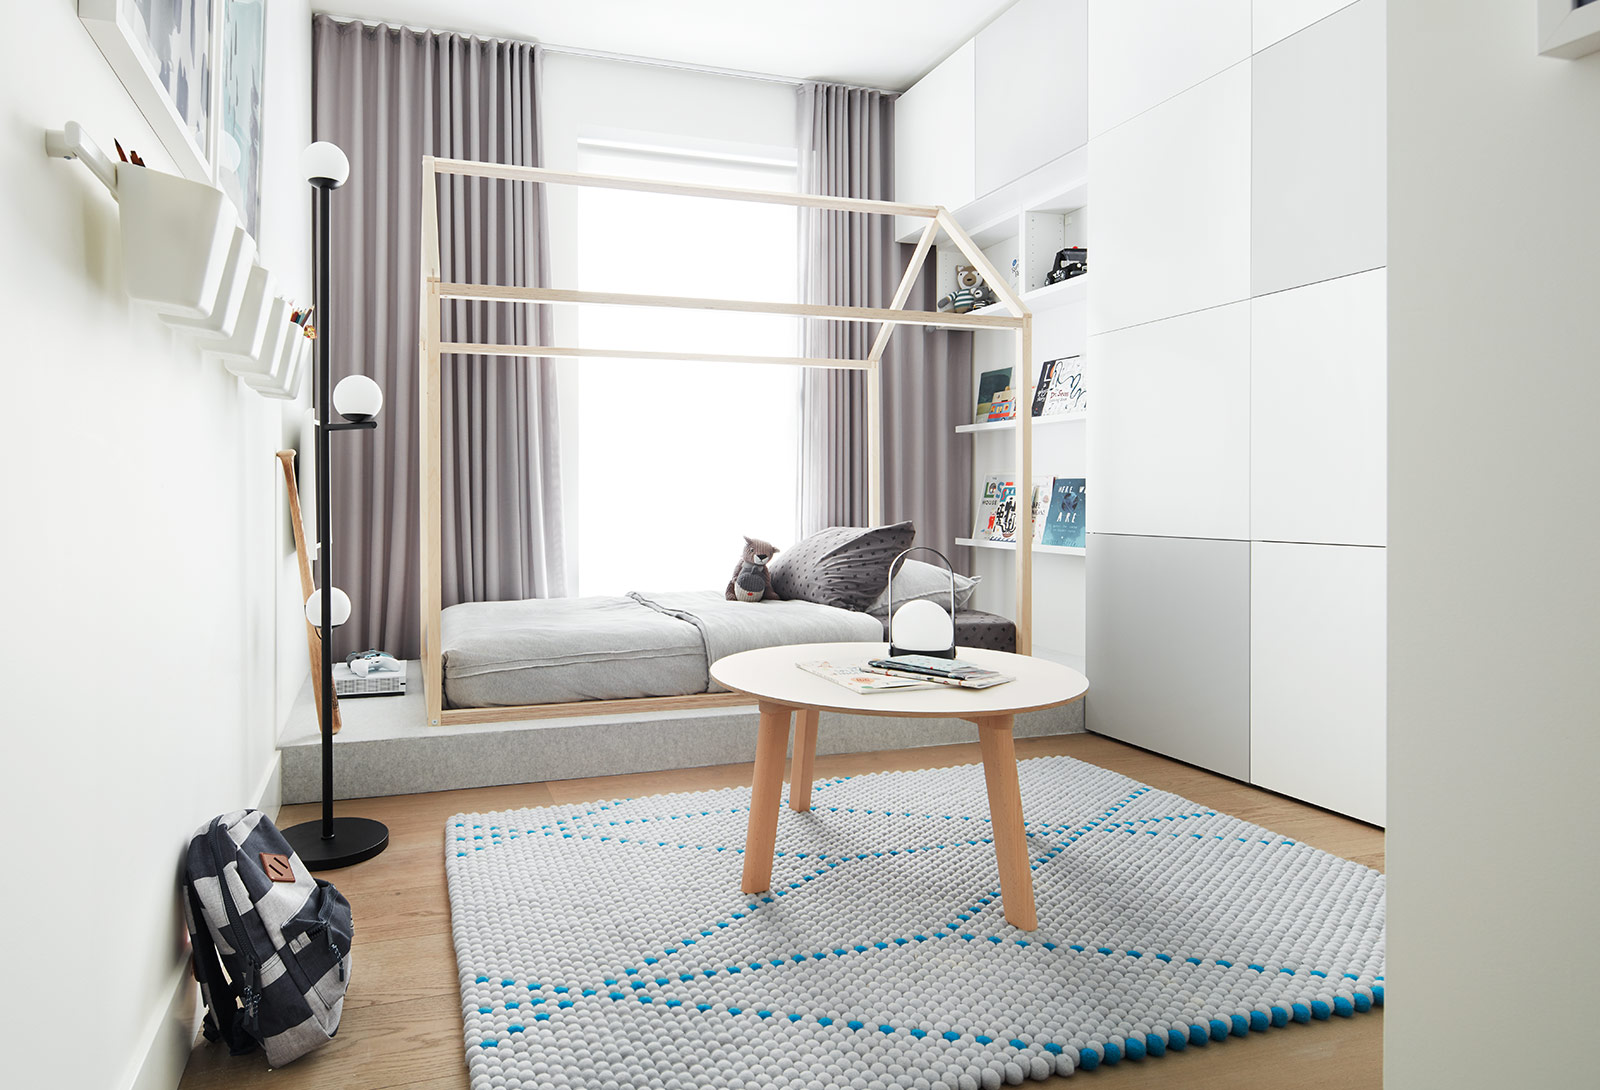 Vancouver 1 - 3 bedroom condos, Shift by Aragon Properties, Sleek and modern design, scandinavian design